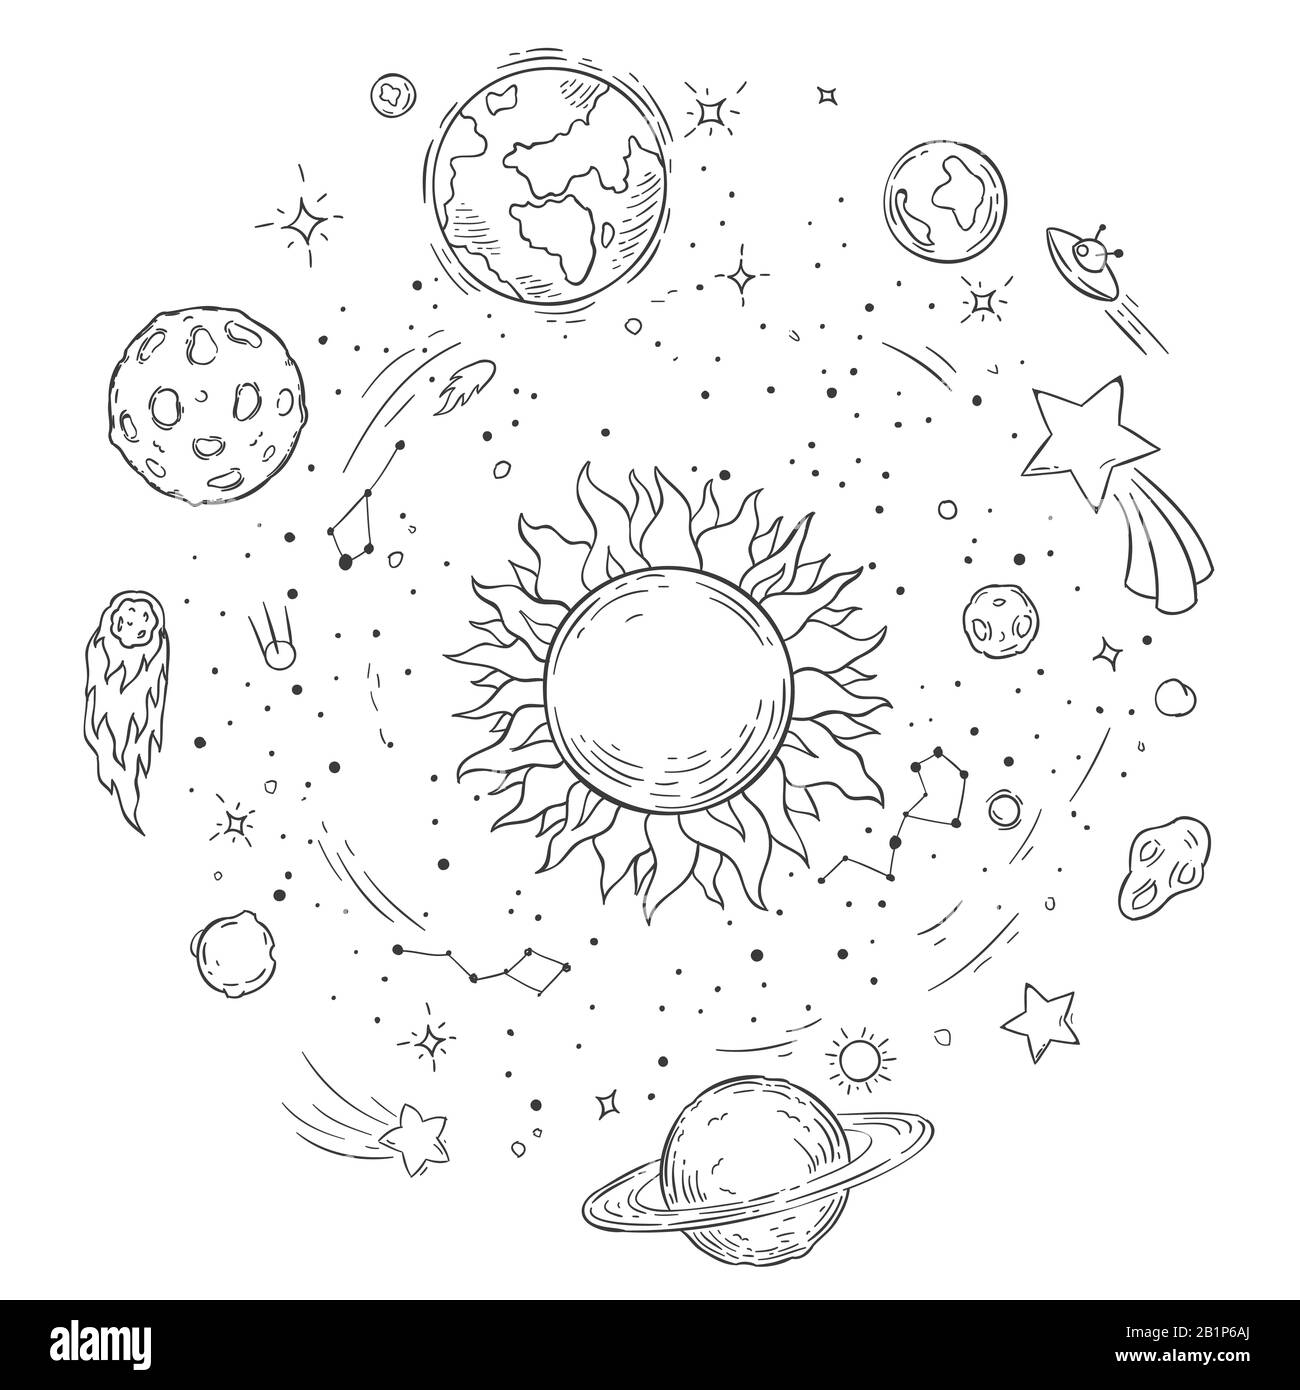 Sistema solare Doodle. Sole disegnato a mano, cometa cosmica e immagine vettoriale della terra del pianeta. Disegno del libro da colorare monocromatico per lo spazio esterno. Corpi celesti Illustrazione Vettoriale